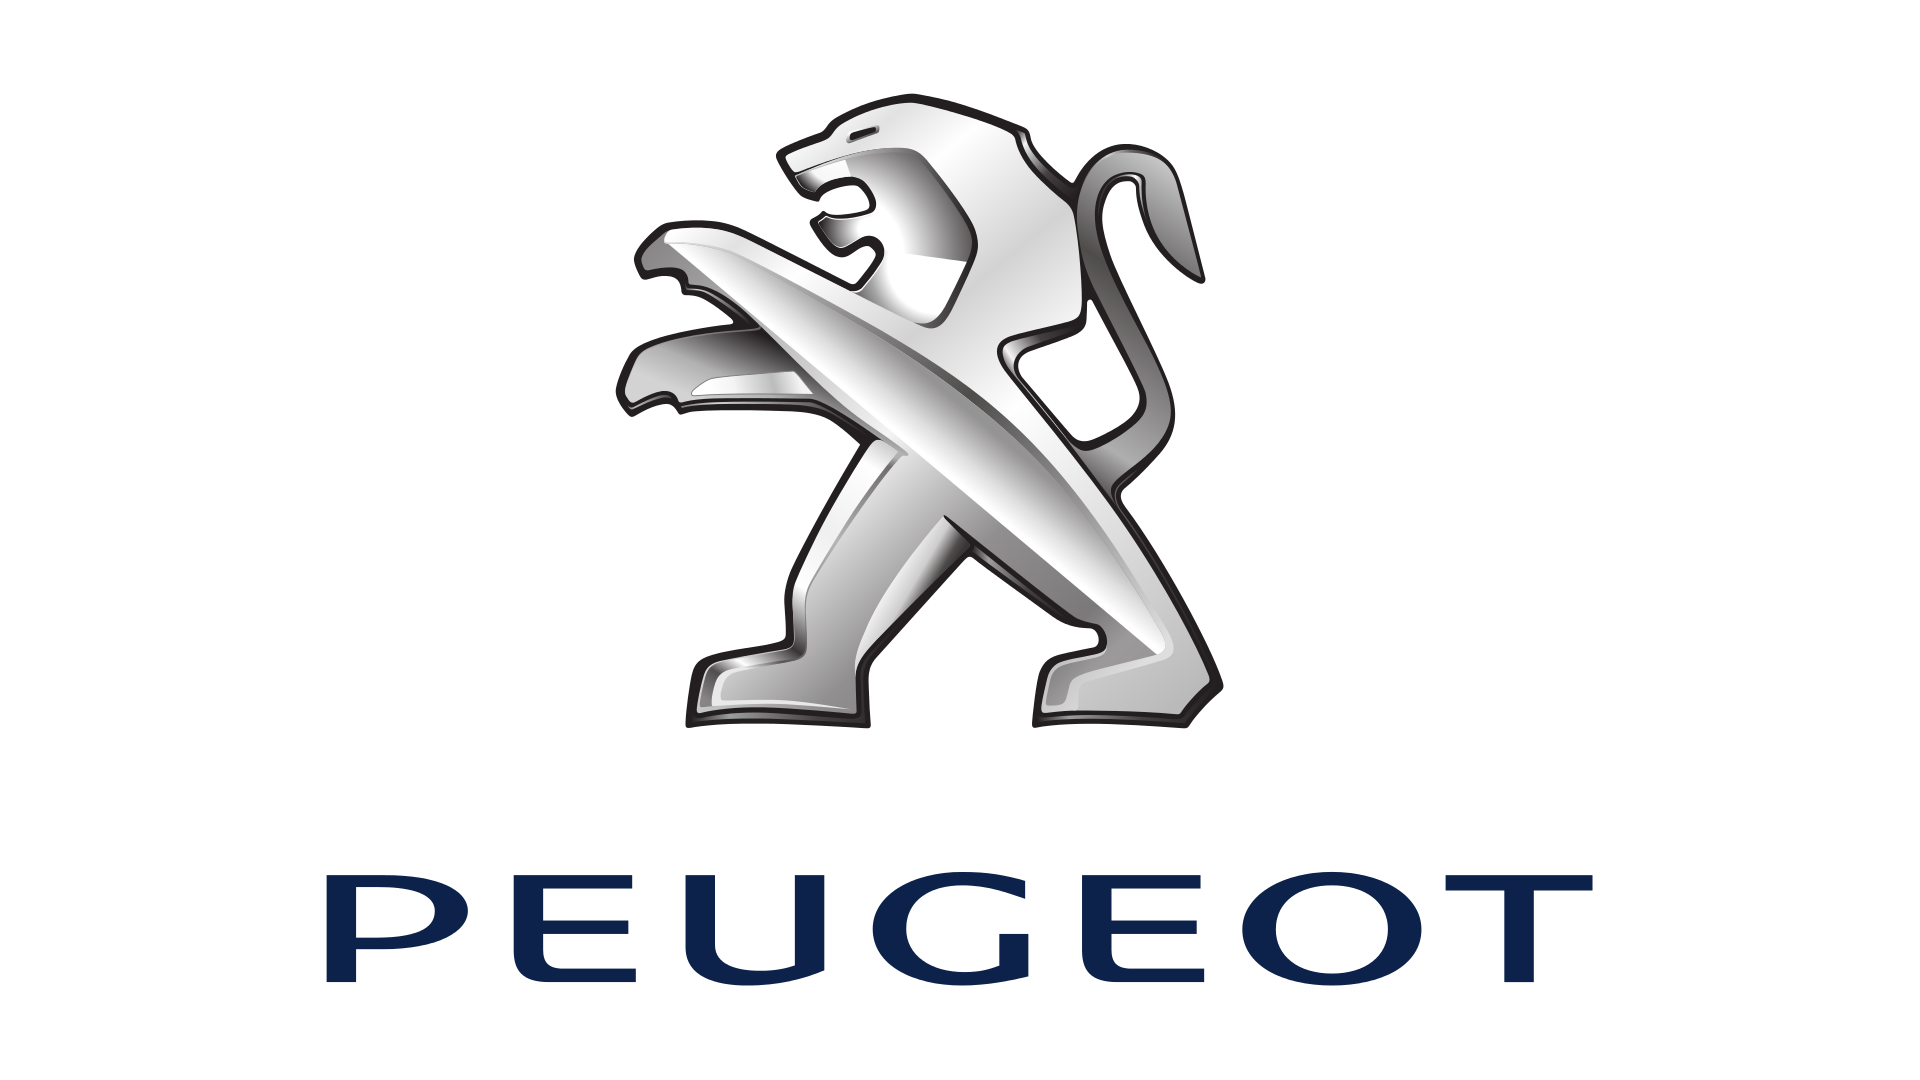 Peugeot - Creteil (PSA Retail) logo